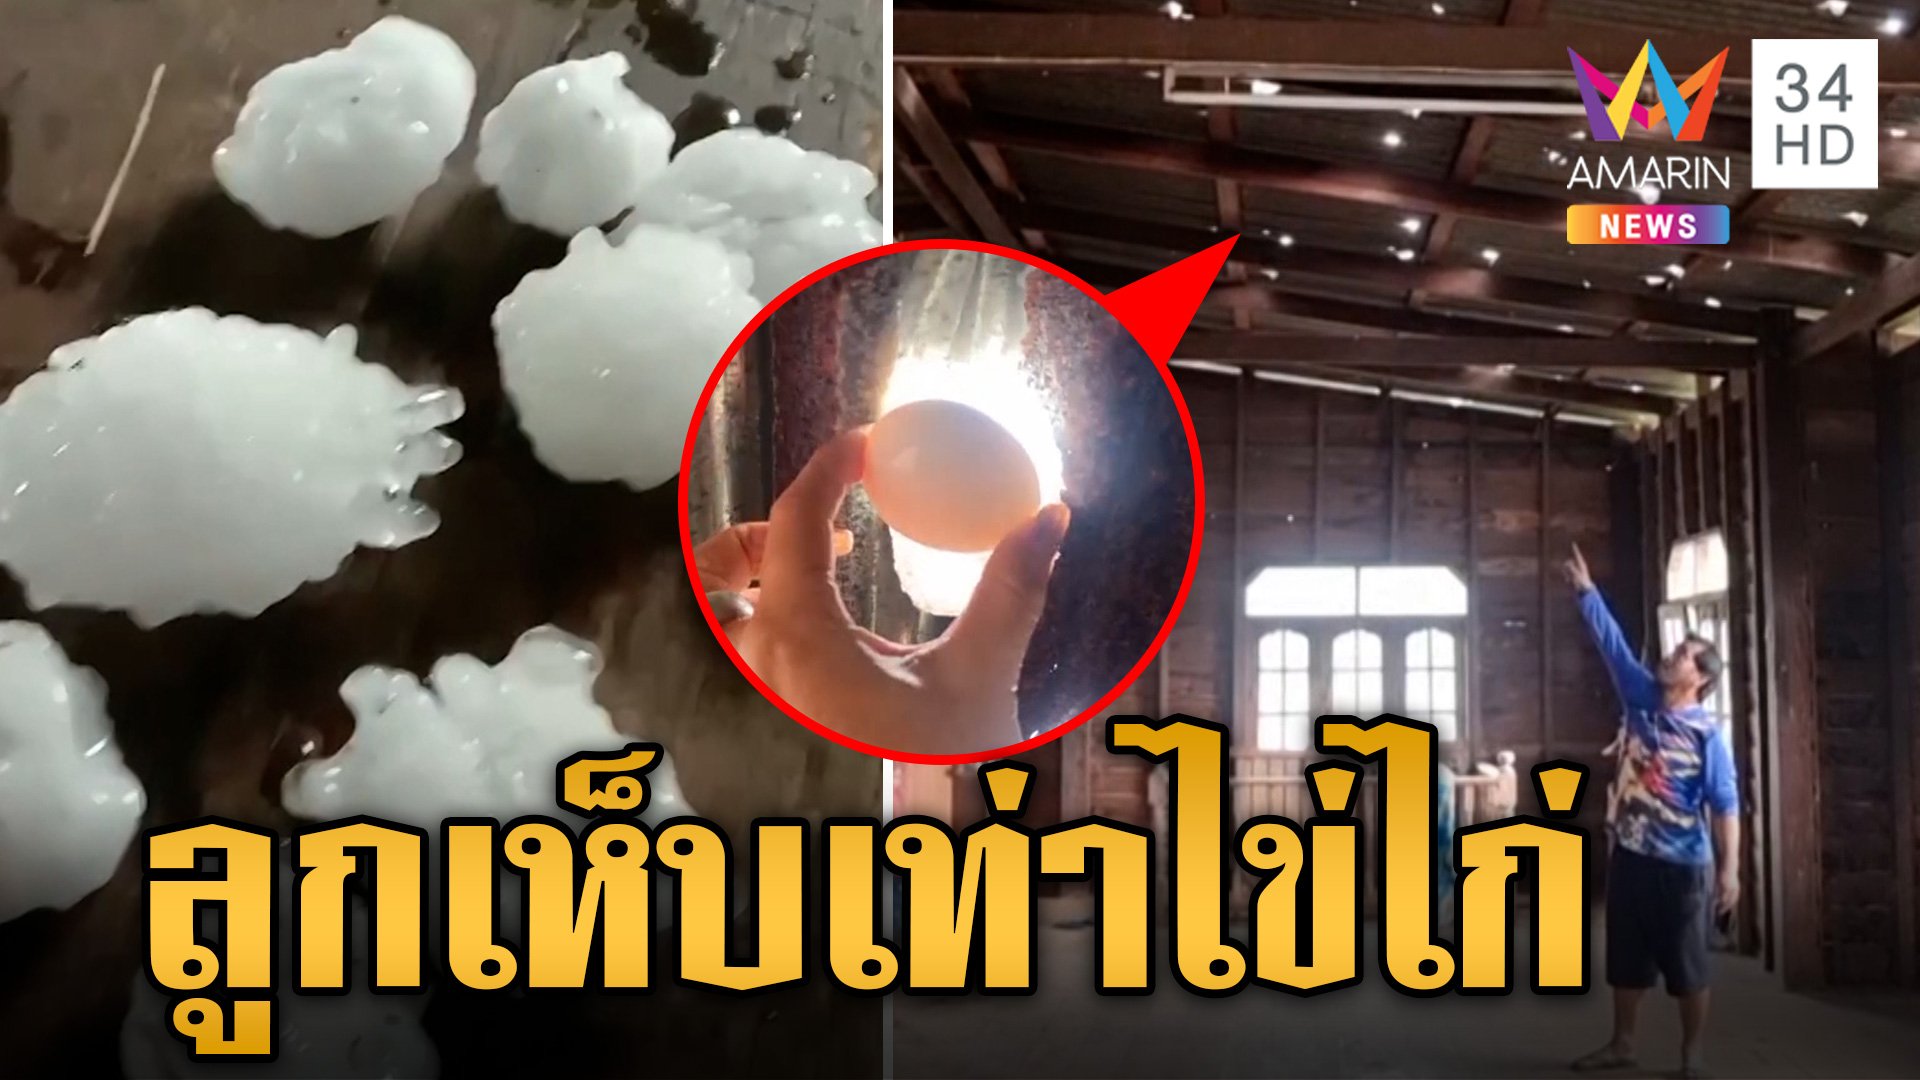 พายุฤดูร้อนถล่มไทย ตะลึง! ลูกเห็บเท่าไข่ไก่ตกใส่หลังคาบ้านจนทะลุ | ข่าวเย็นอมรินทร์ | 29 มี.ค. 67 | AMARIN TVHD34